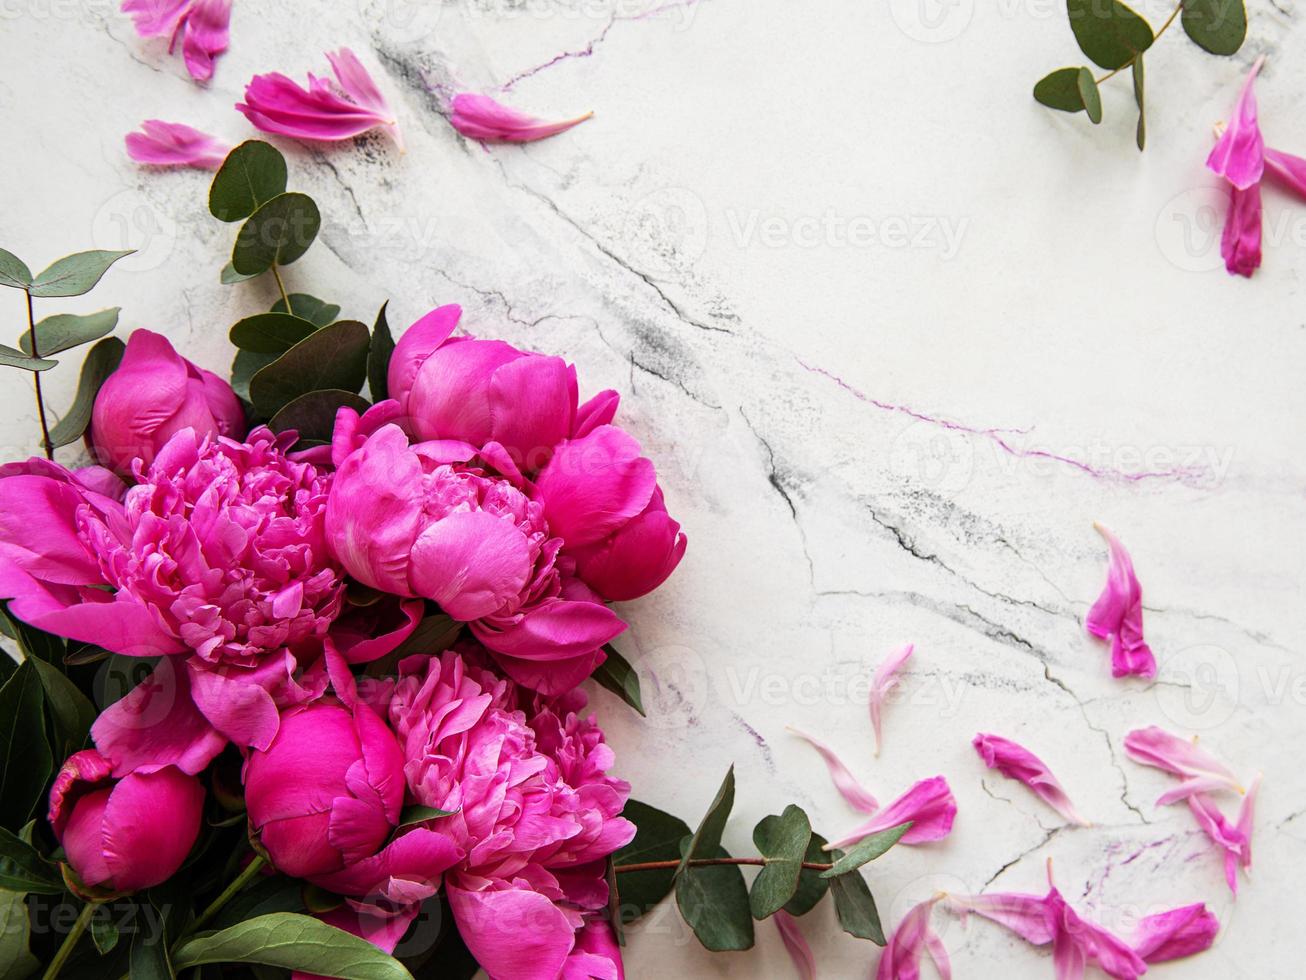 roze pioenrozen op een marmeren achtergrond foto